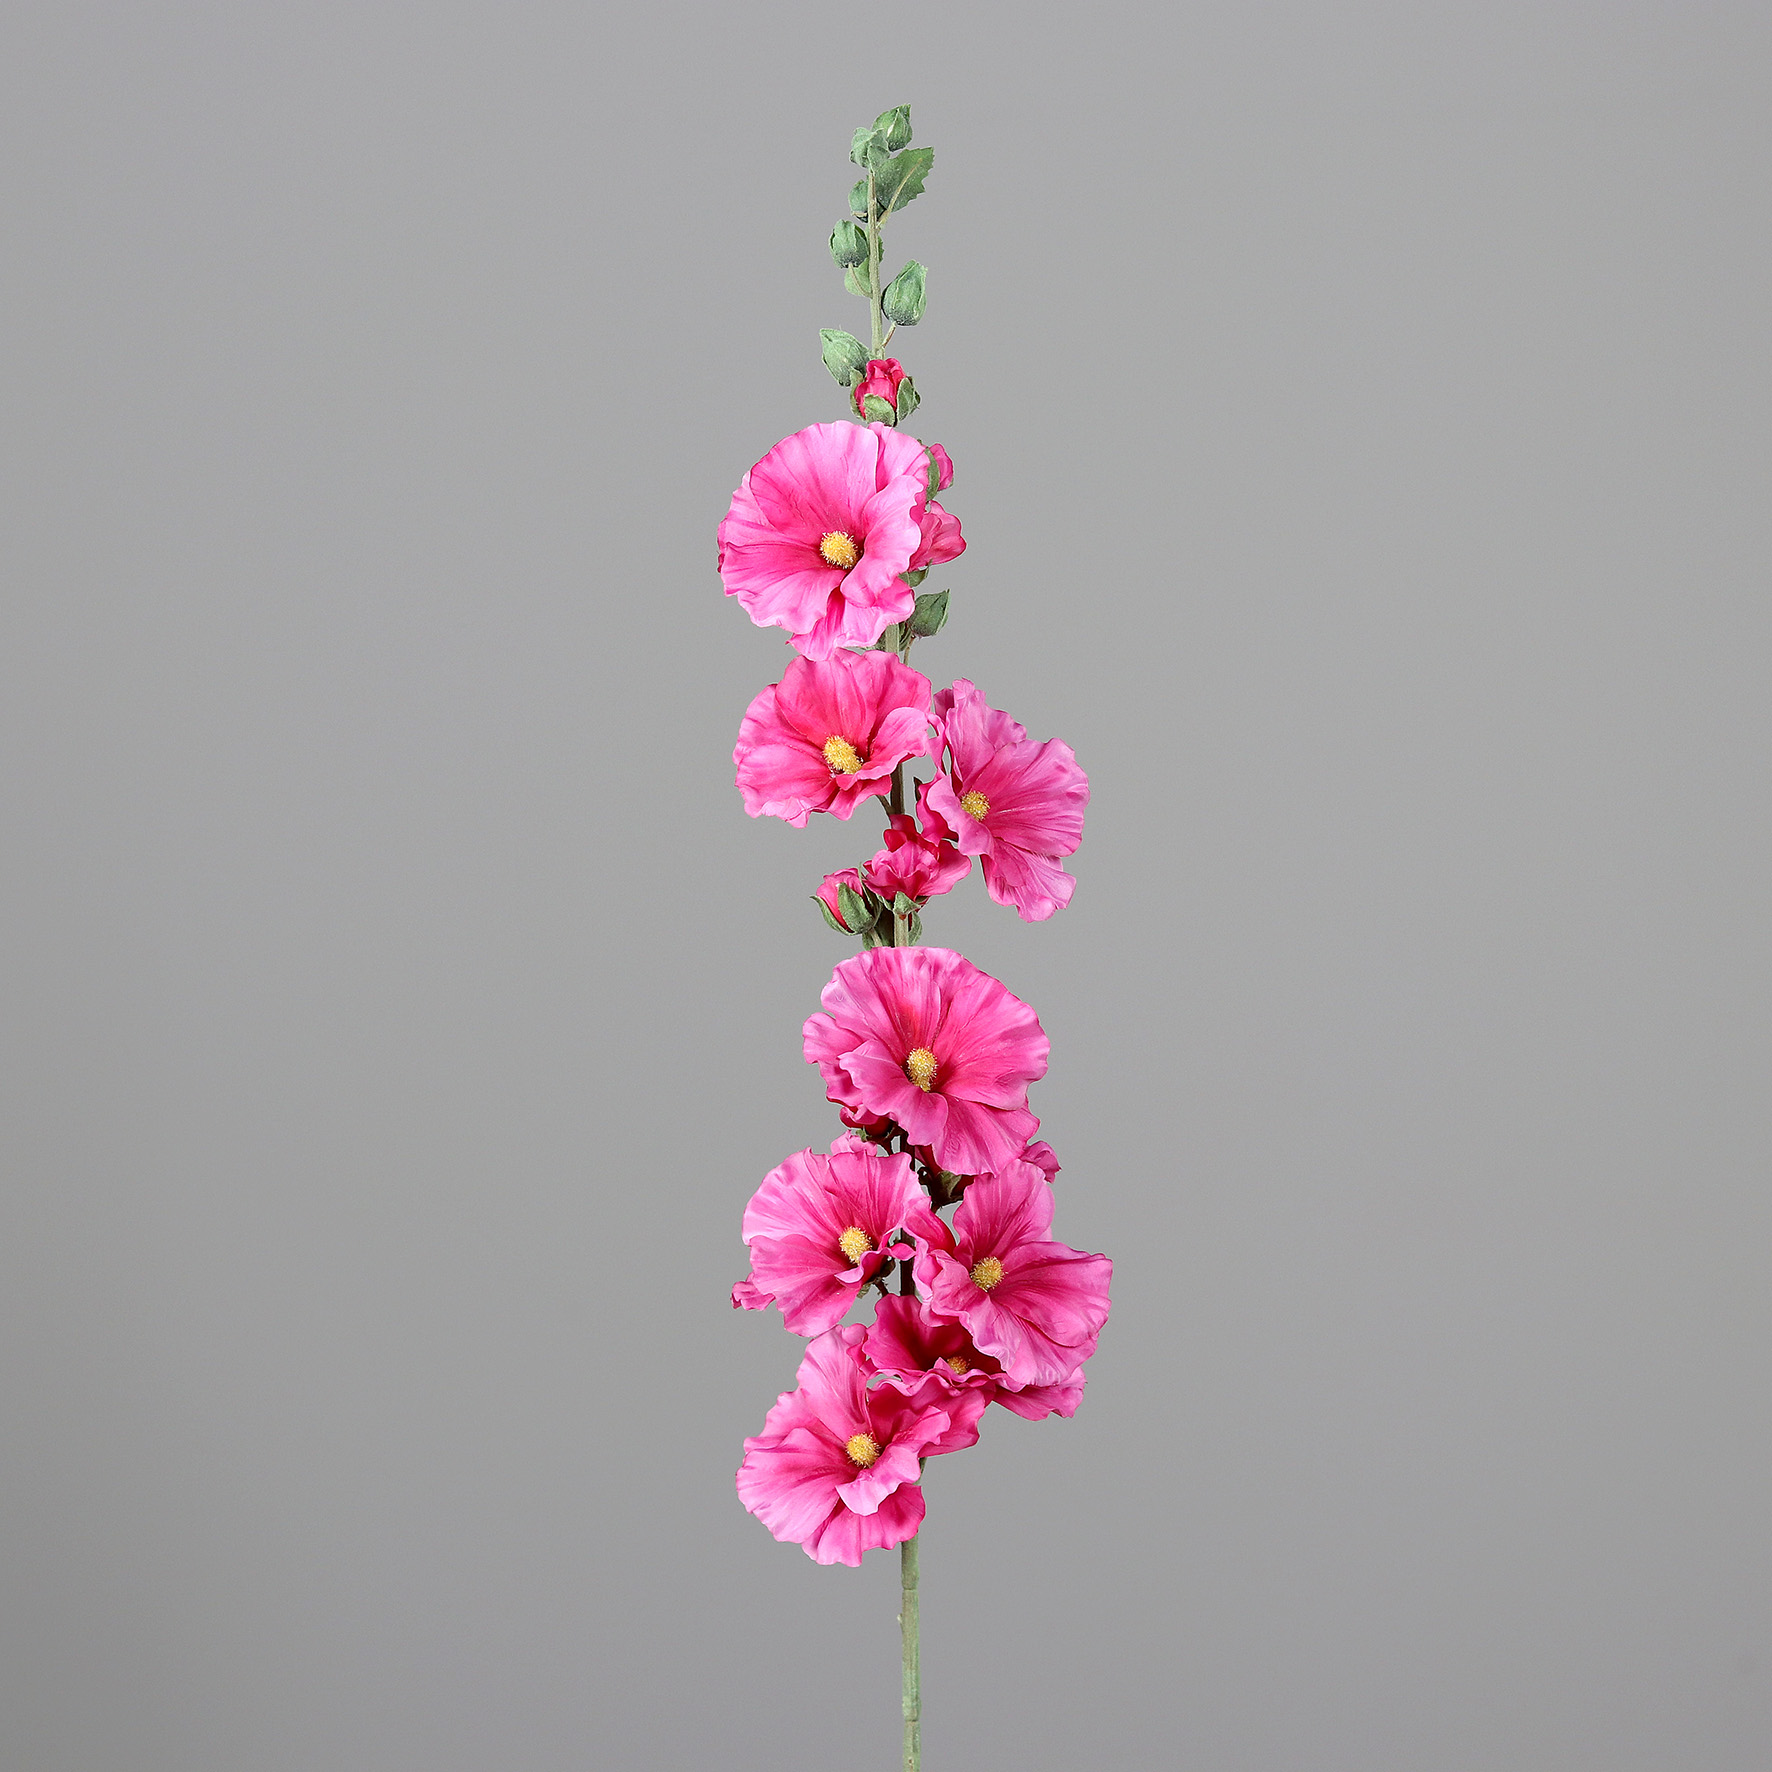 Malve 115cm rosa-pink DP Kunstblumen Seidenblumen künstliche Malva sylvestris Käsepappel Rosspappel Zweige Blumen